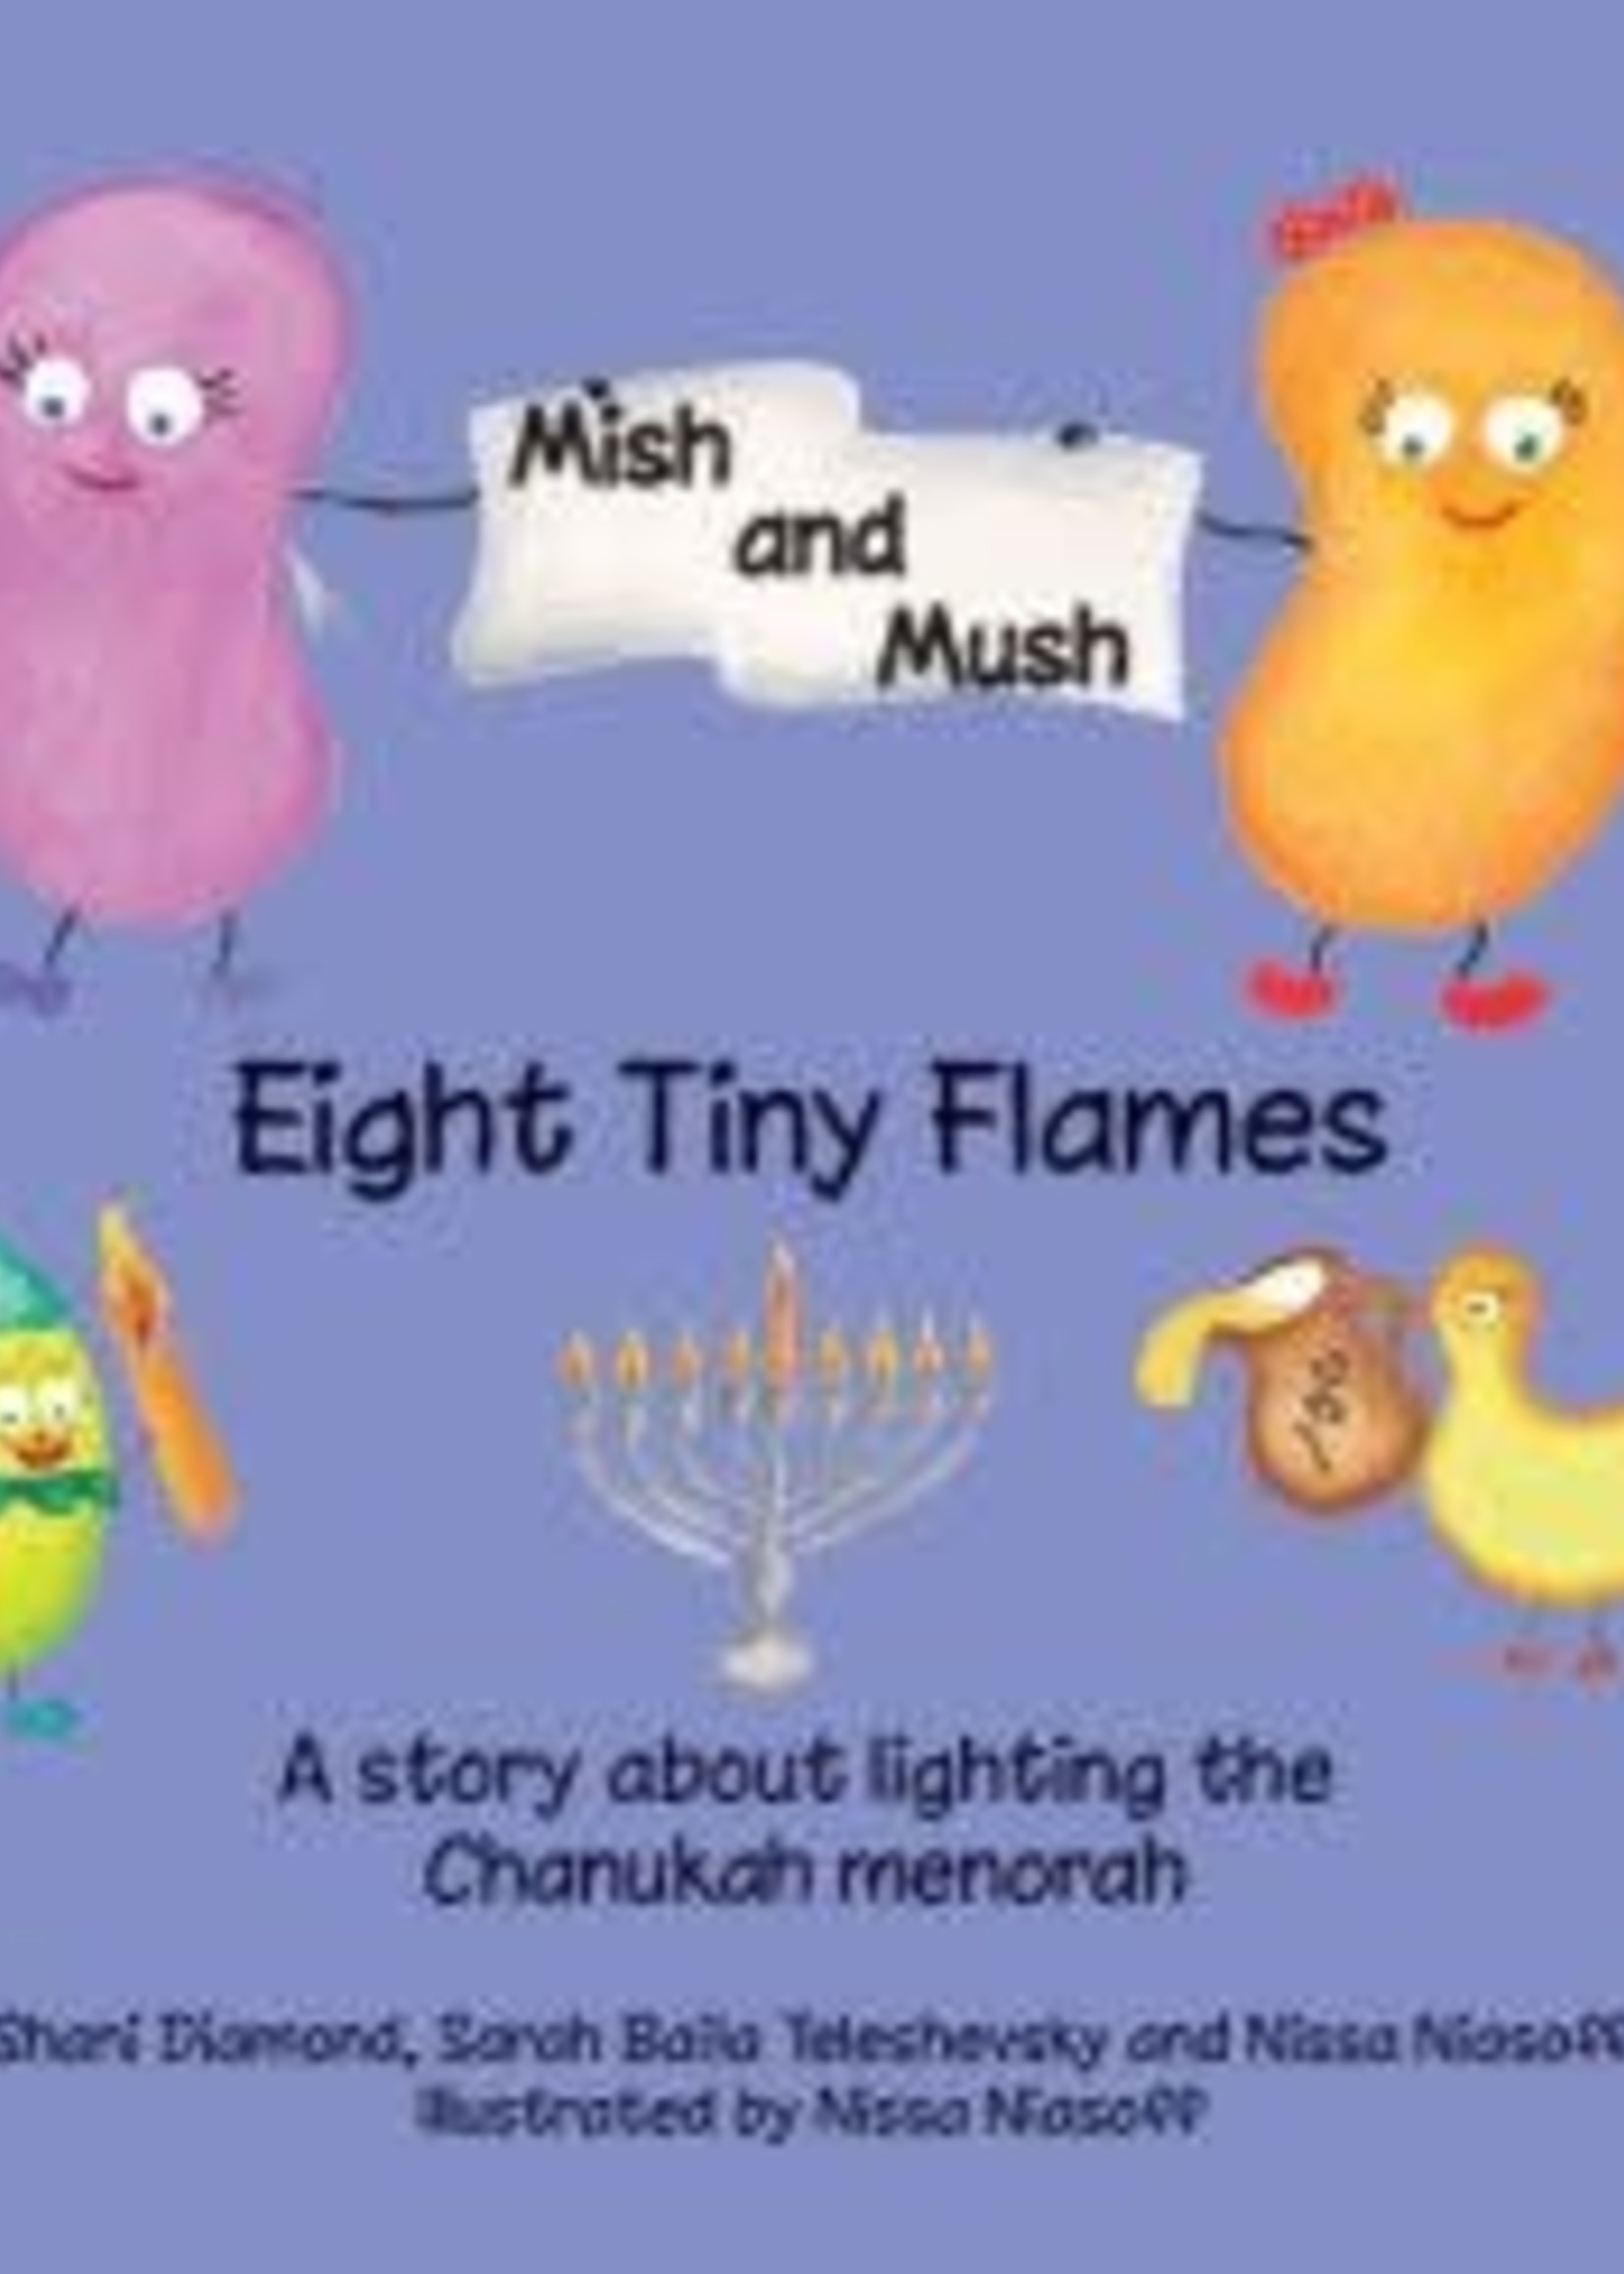 Mish and Mush - 8 Tiny Flames